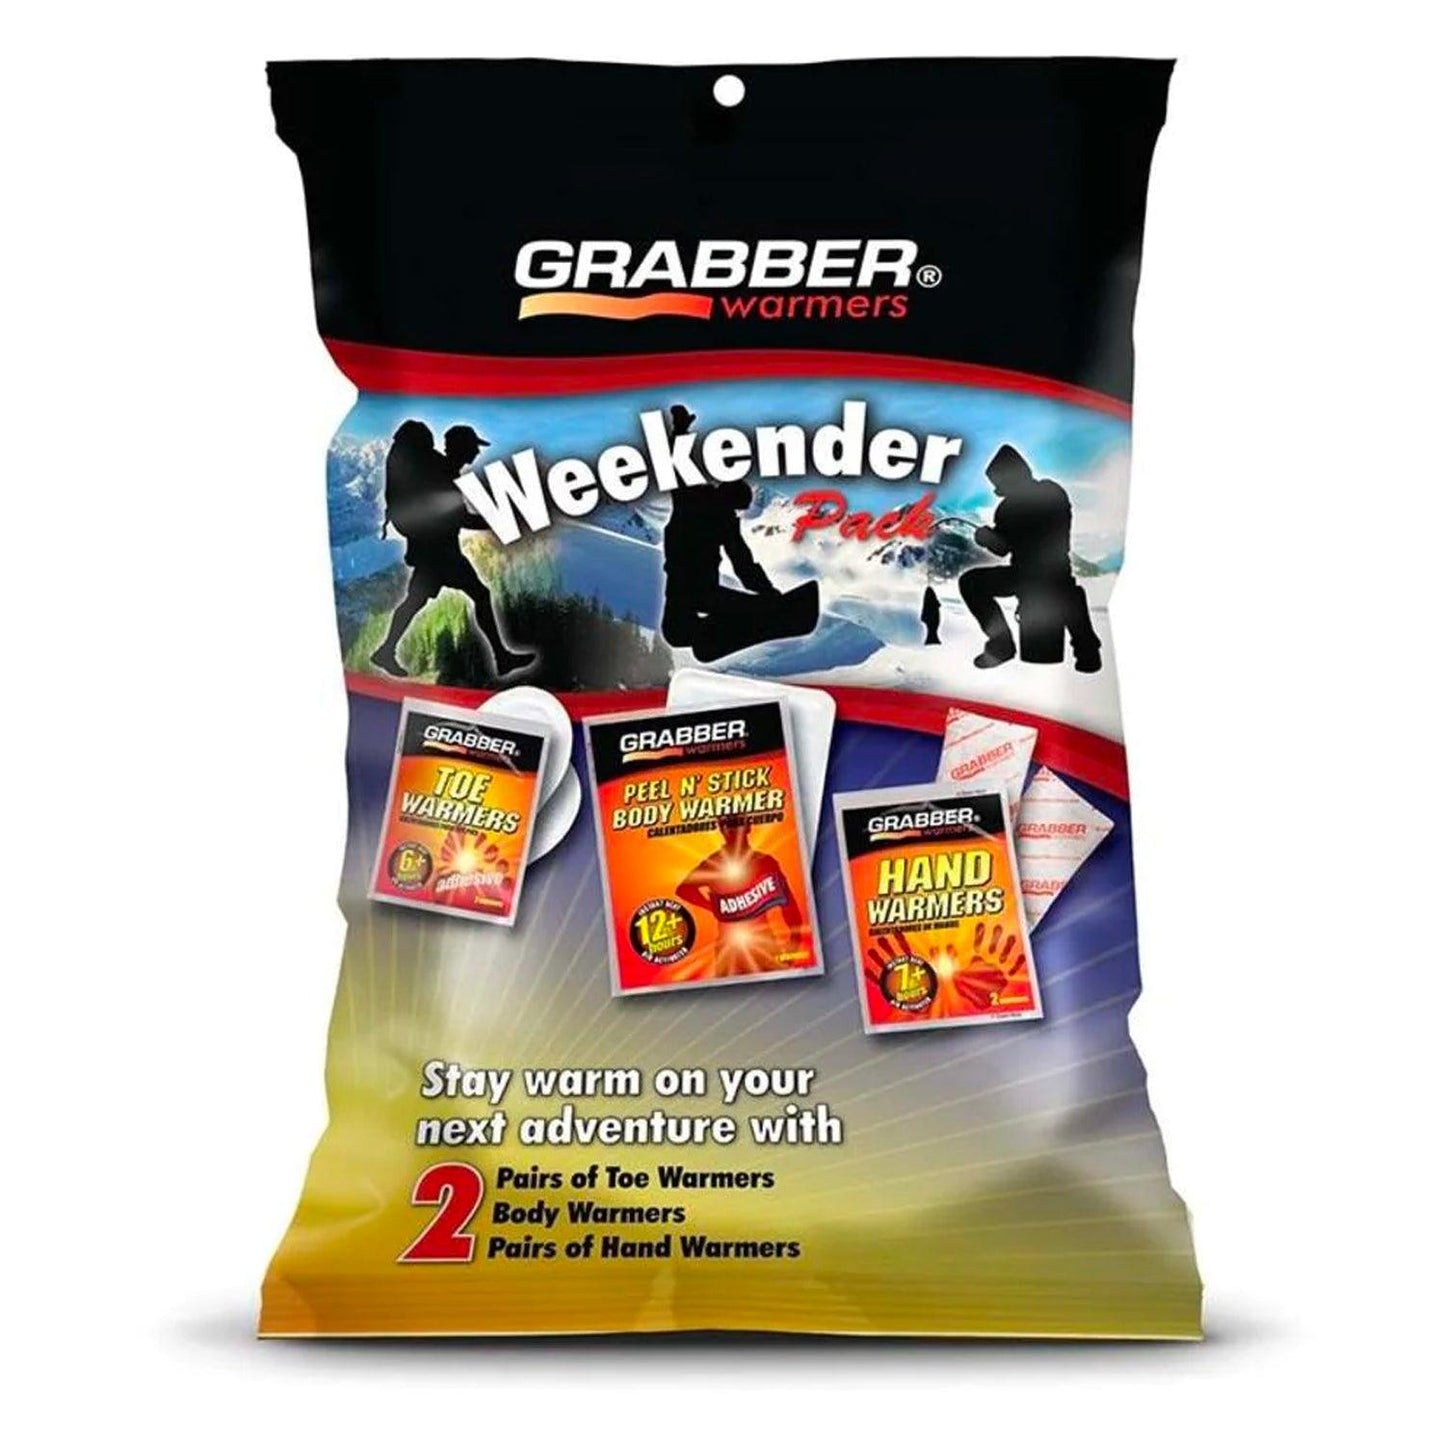 Grabber Warmers Weekender Multi-Warmer Pack, 2 Pair Hand, 2 Pair Toe, 2 Peel N' Stick Body Warmers, 6-Count